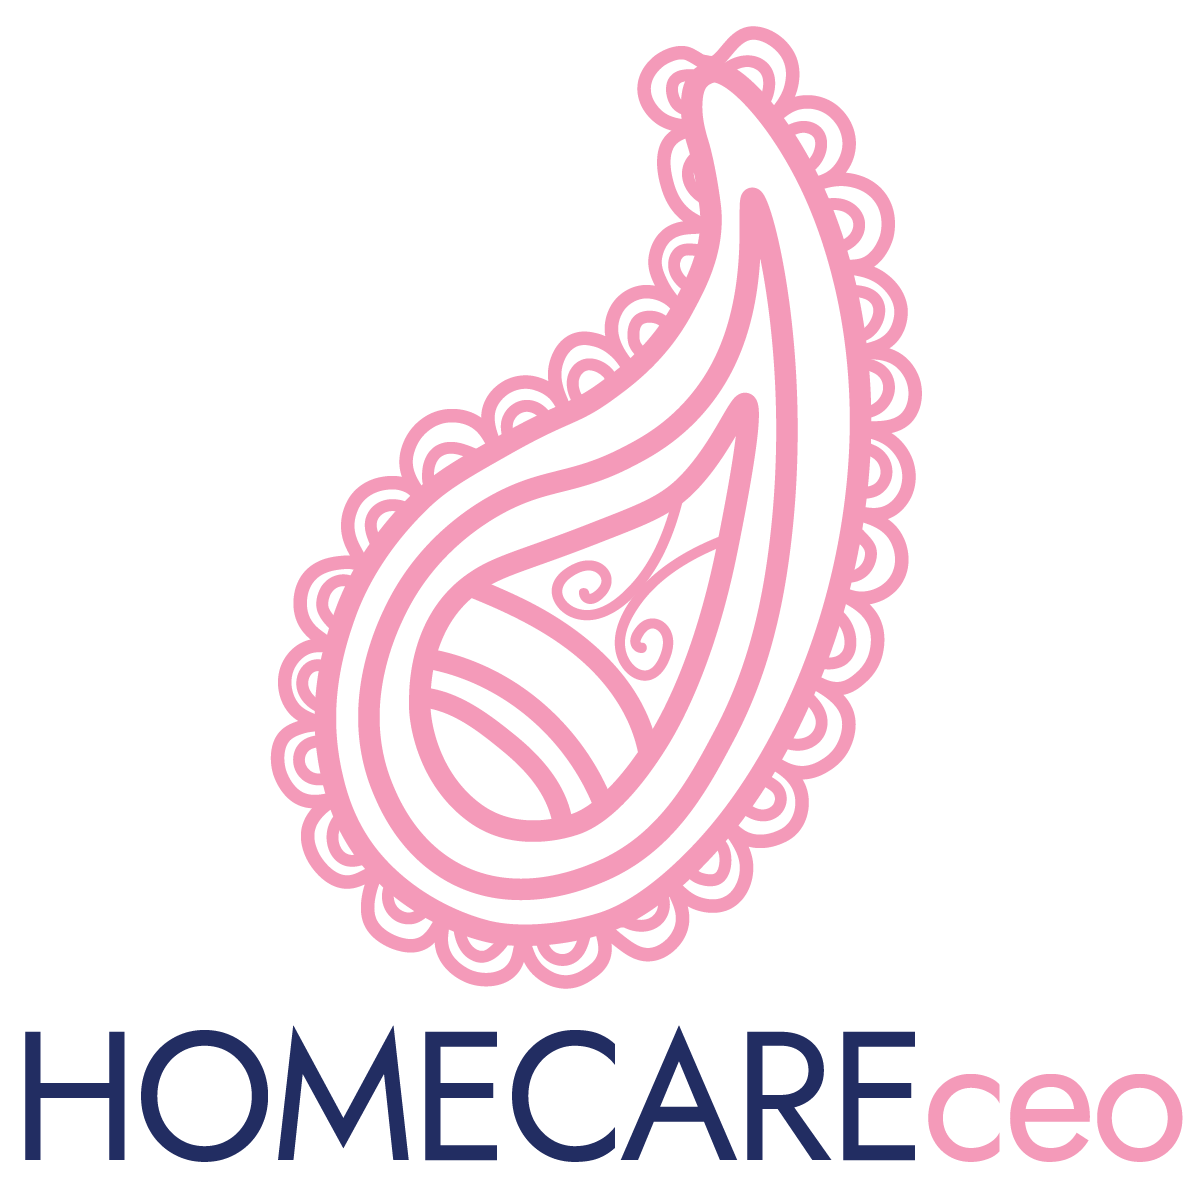 Homecare CEO Forum